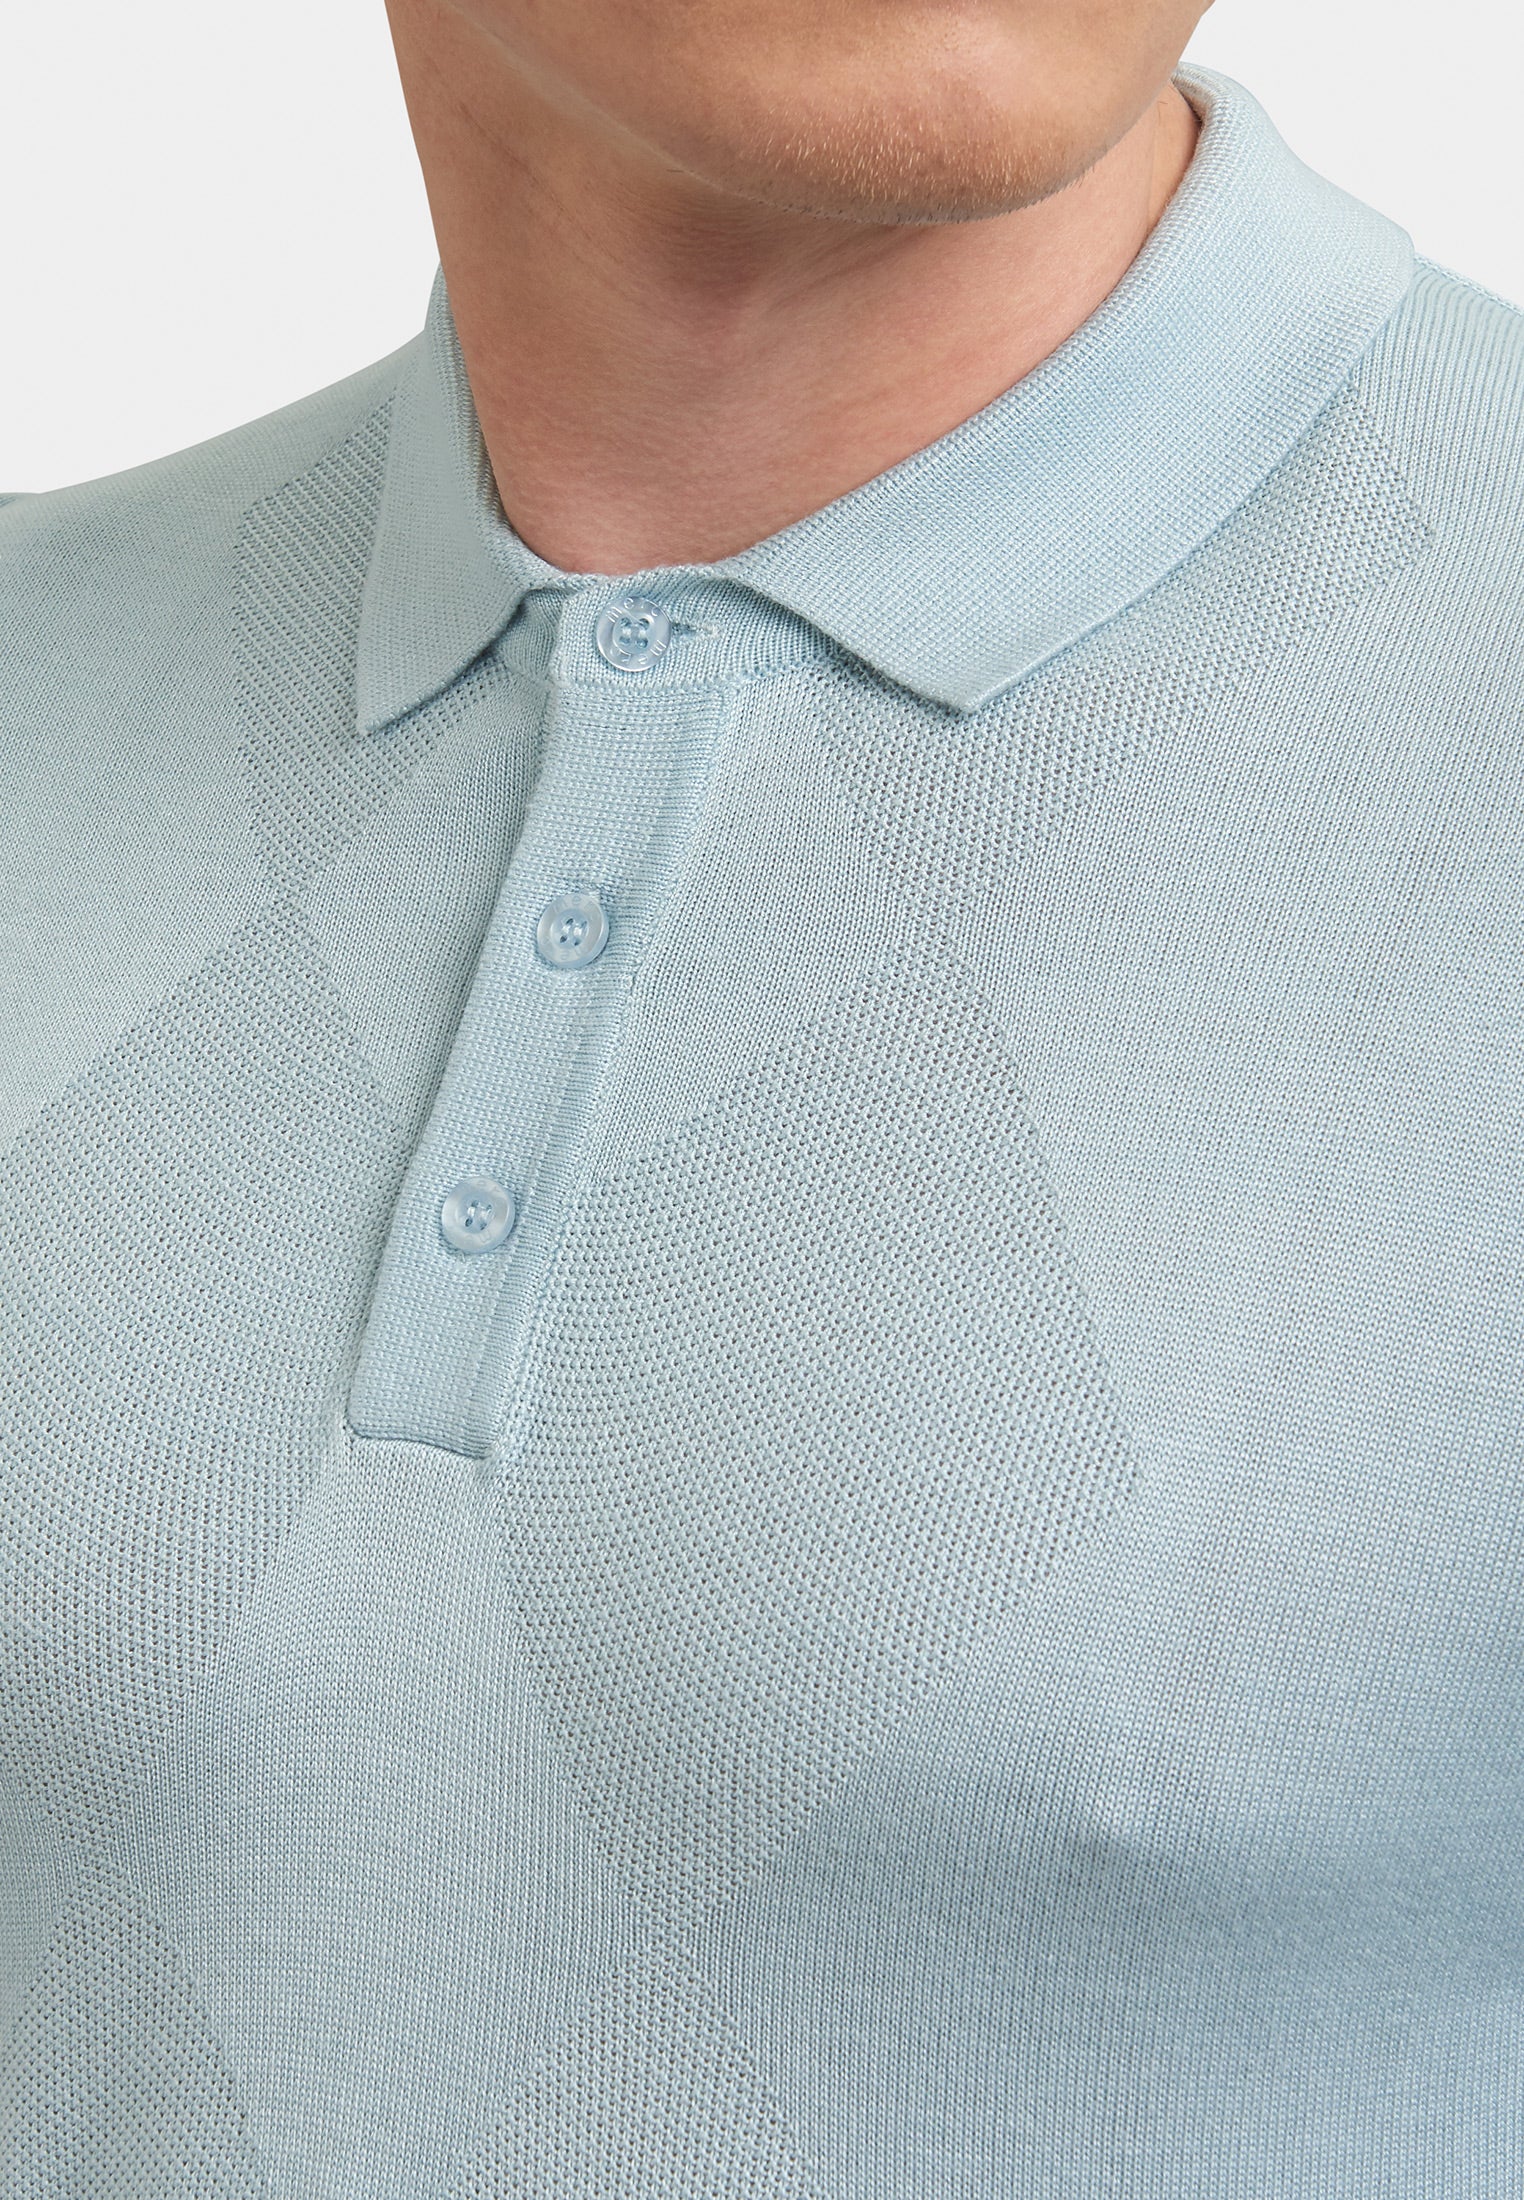 Stokes Argyle Knitted Polo Shirt Detail - Merc London